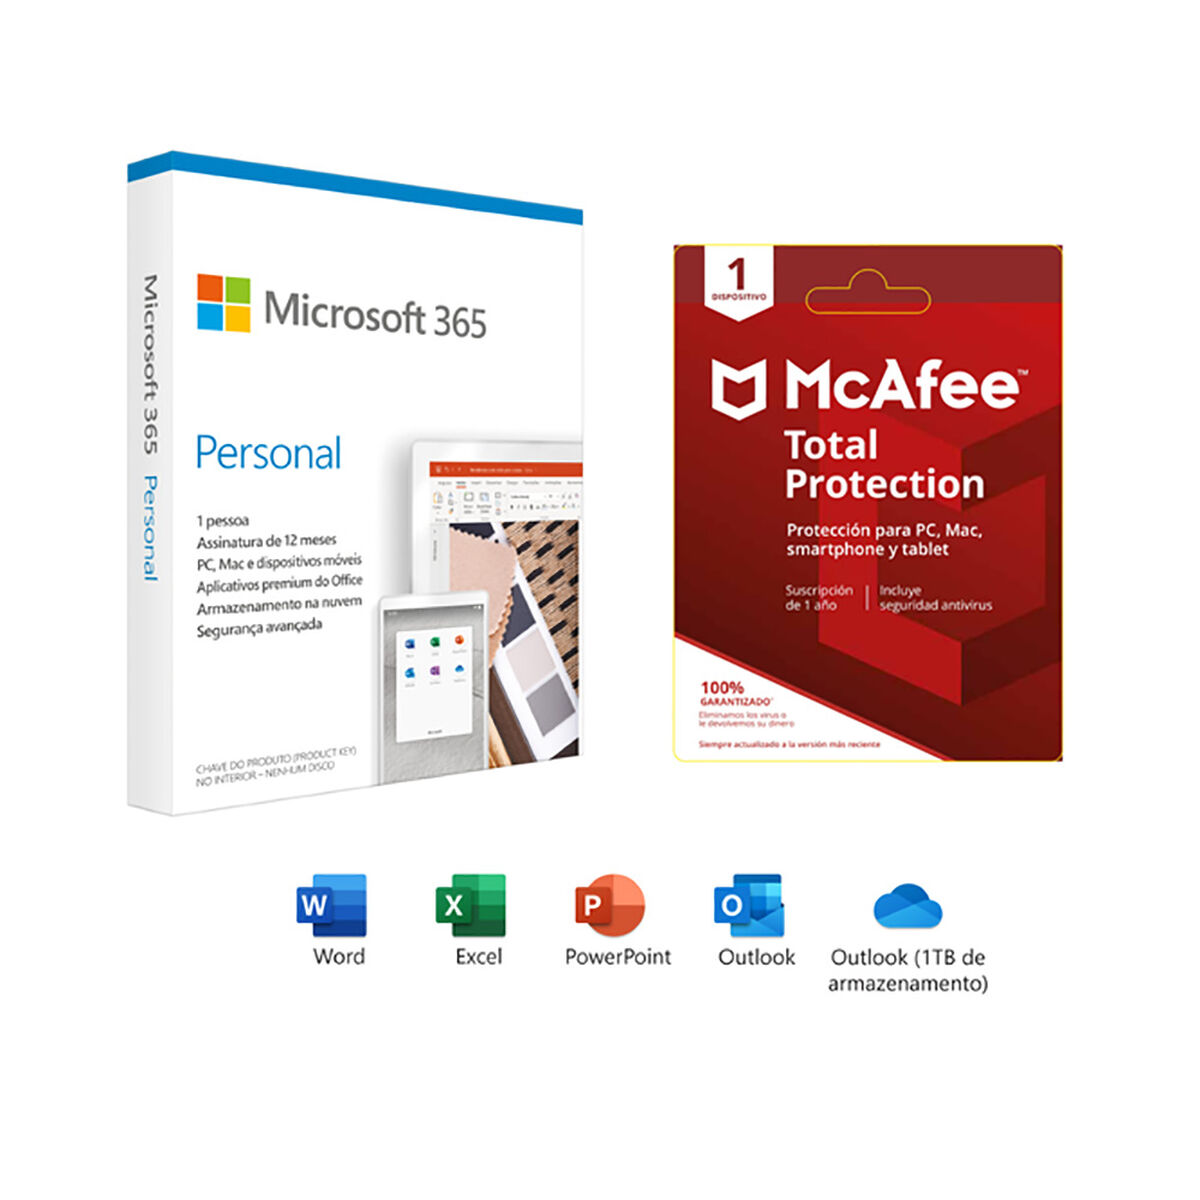 Microsoft Office 365 Personal Suscripción 1 Año + McAfee Protección Total 1 Año